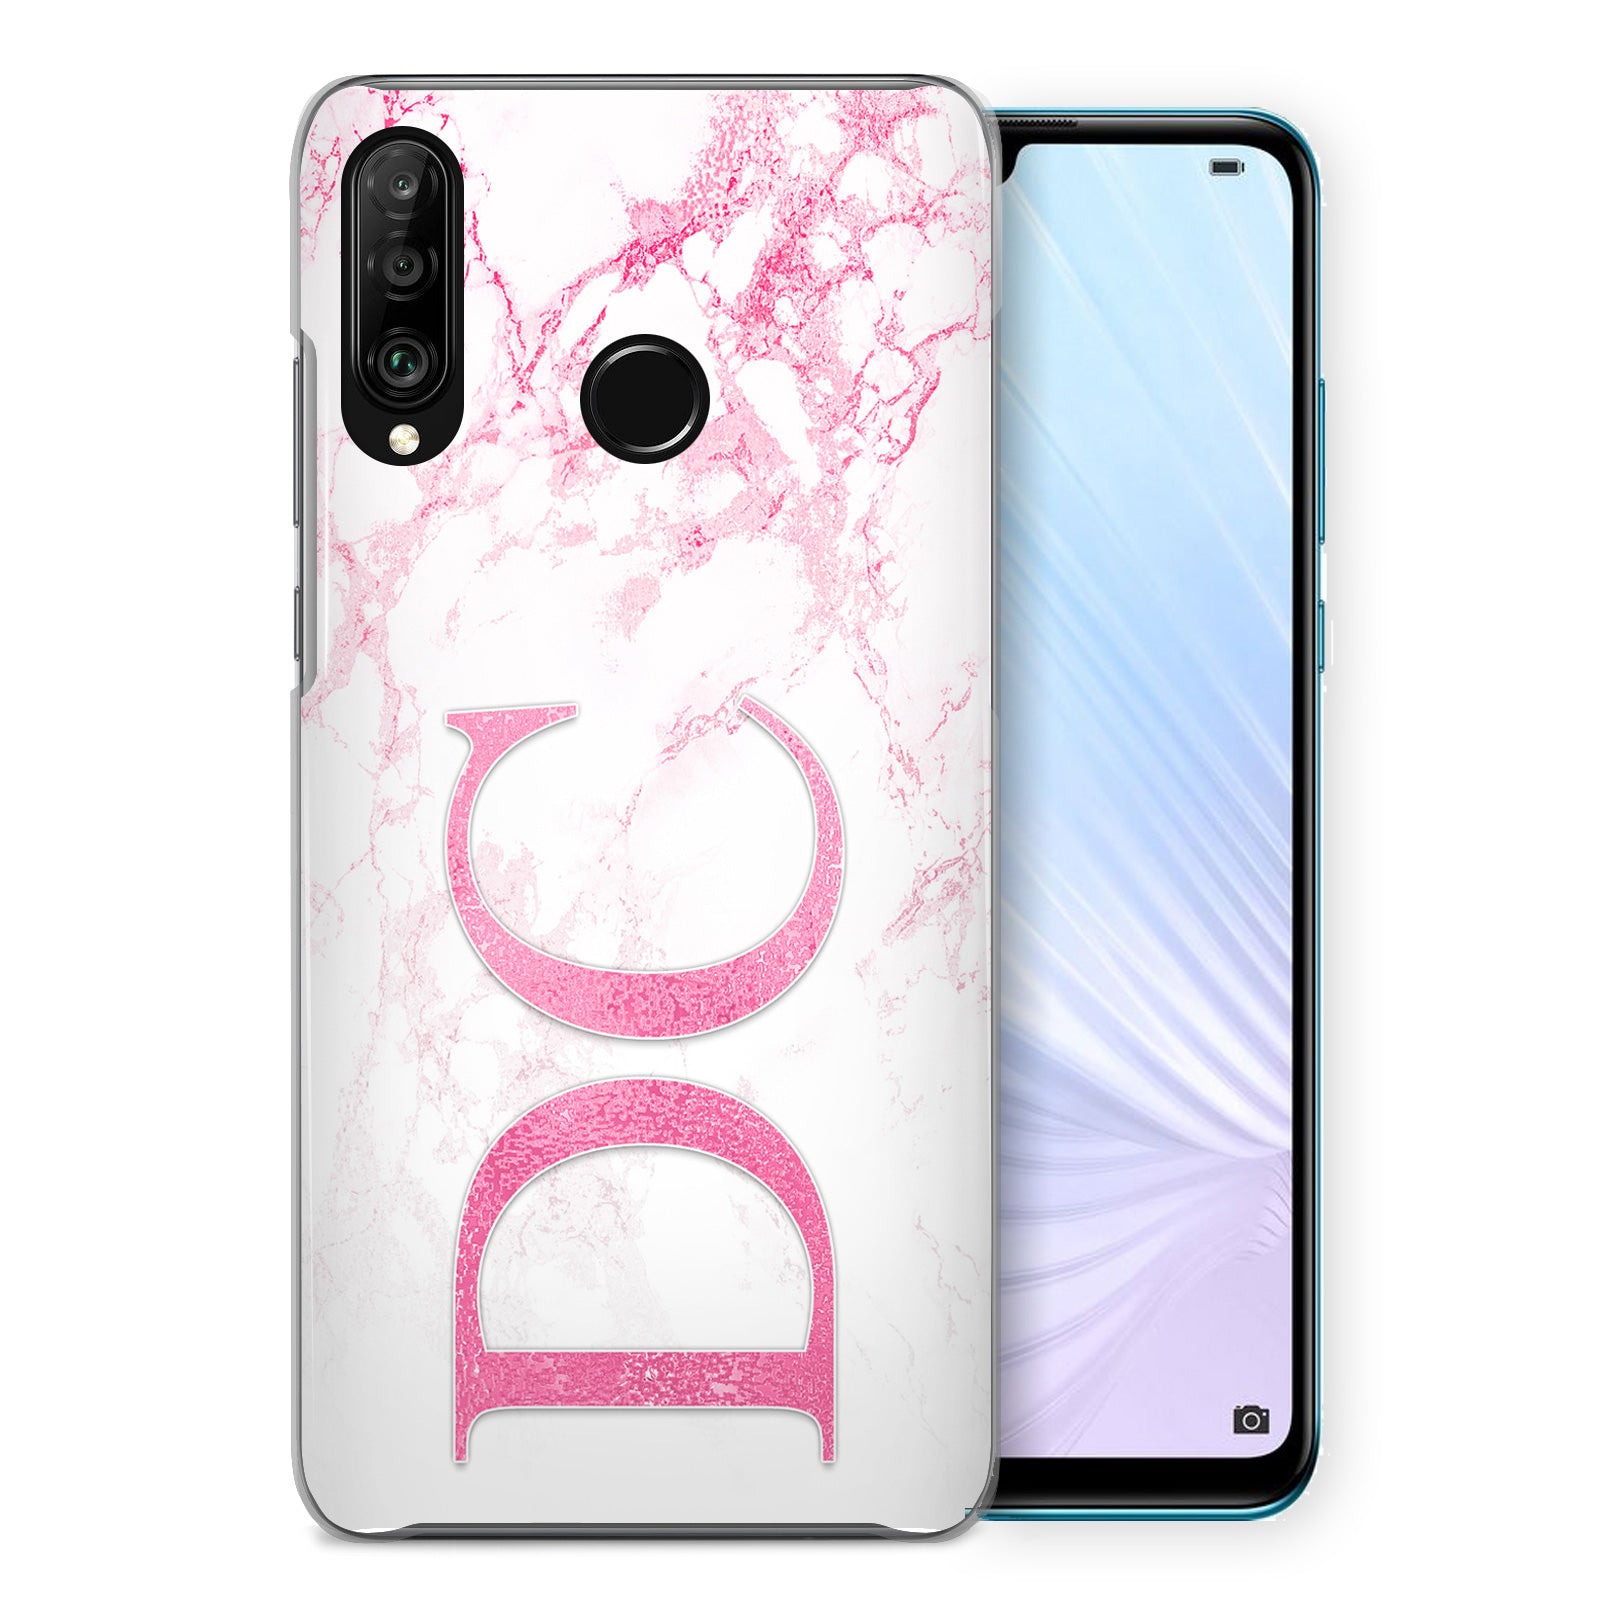 Personalised Huawei Hard Case - Pink Marble & Pink Monogram